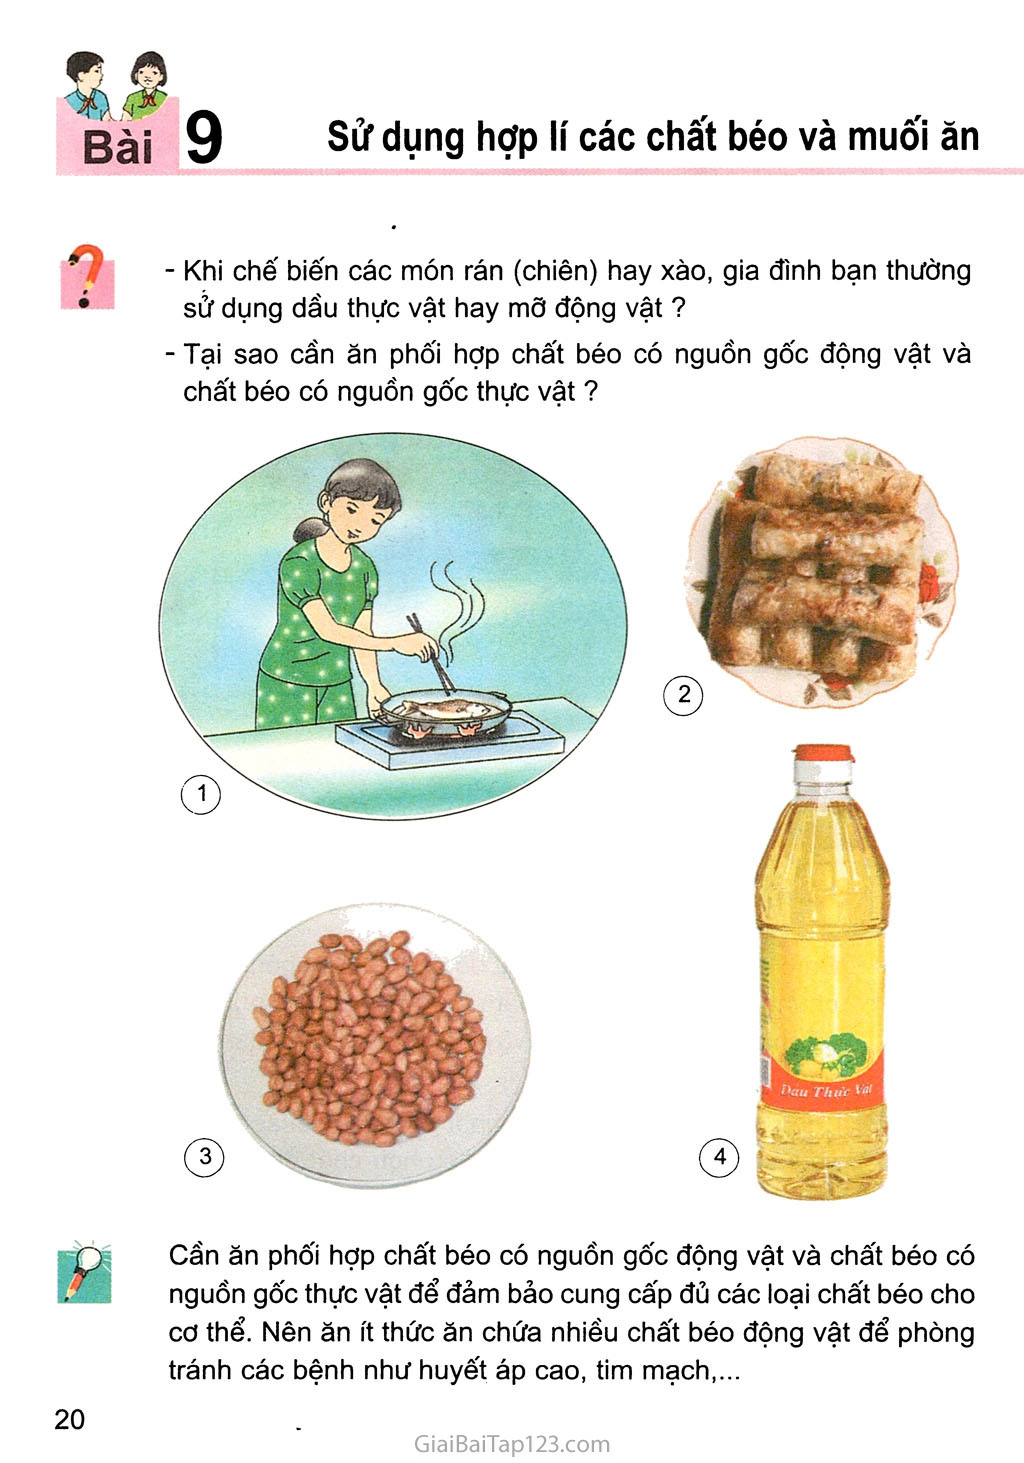 Bài 9. Sử dụng hợp lí các chất béo và muối ăn trang 1